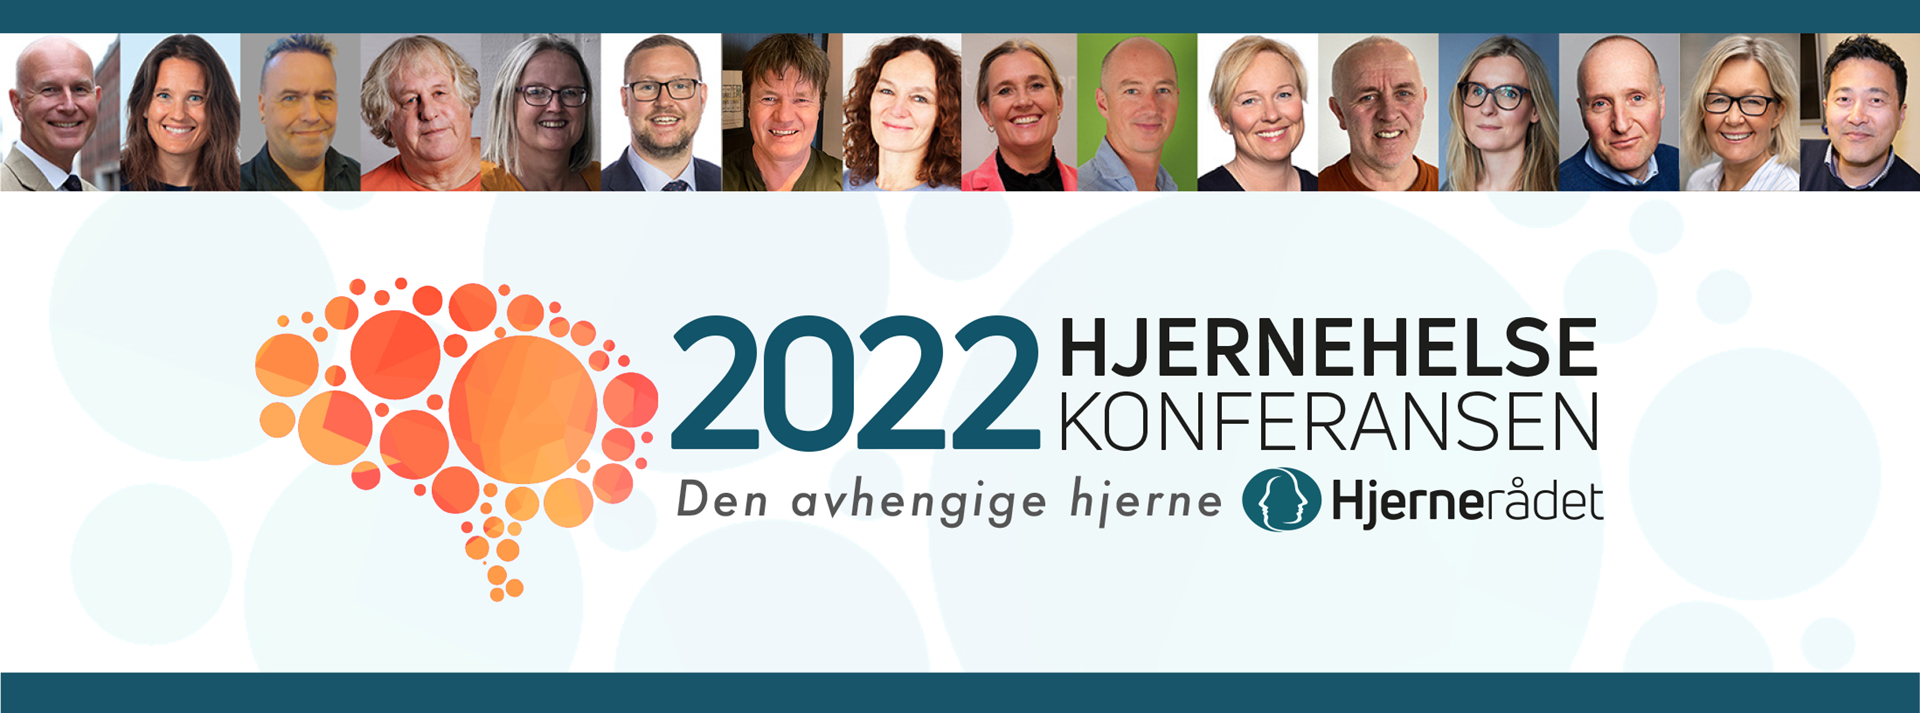 Banner for Hjernehelsekonferansen 2022.